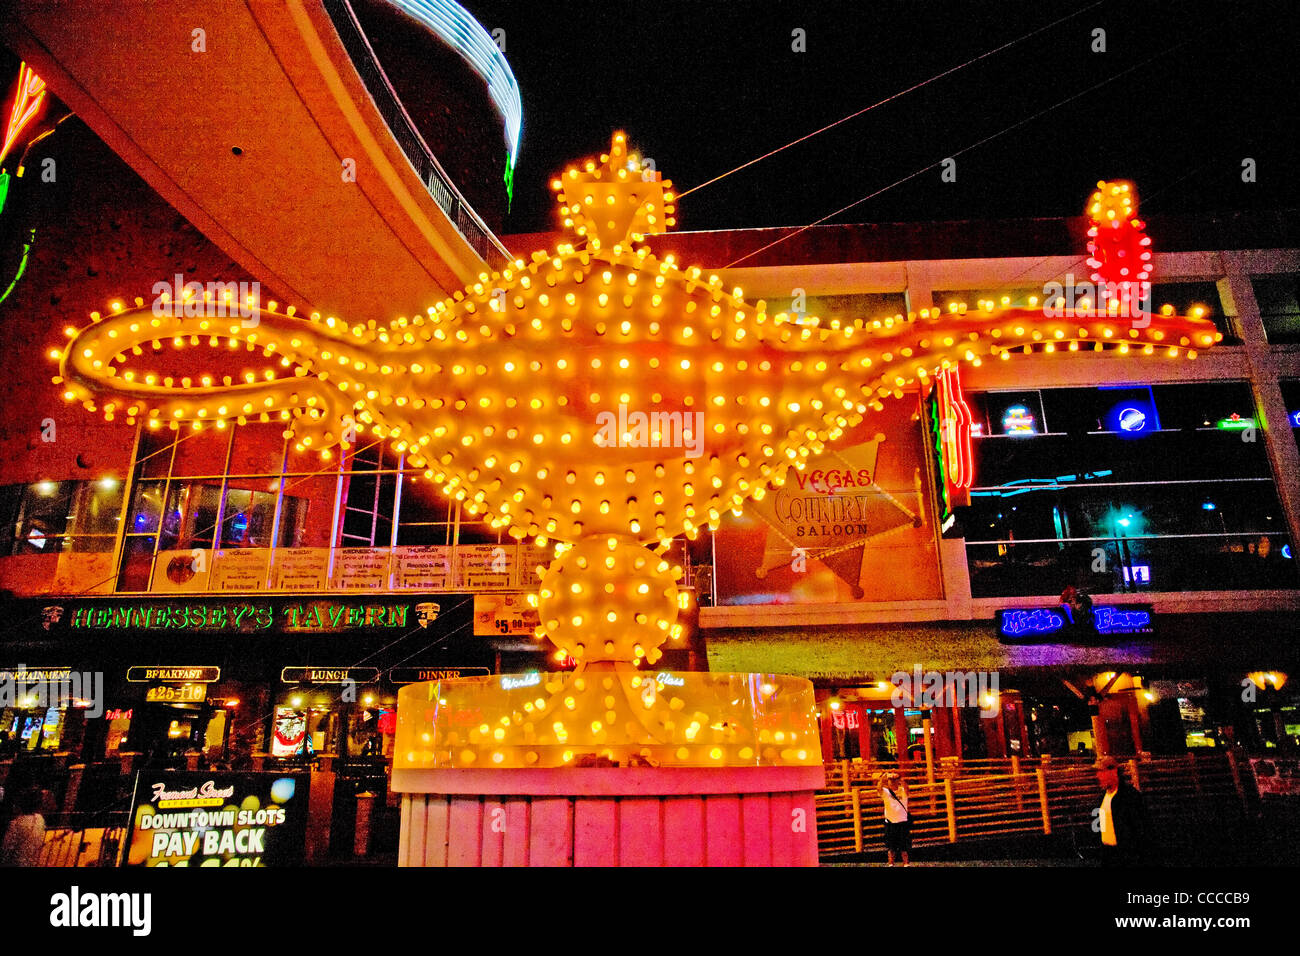 Aladdin's Lamp décore signe à Fremont Street Las Vegas, NV, dans le cadre de la "Fremont Street Experience". Banque D'Images